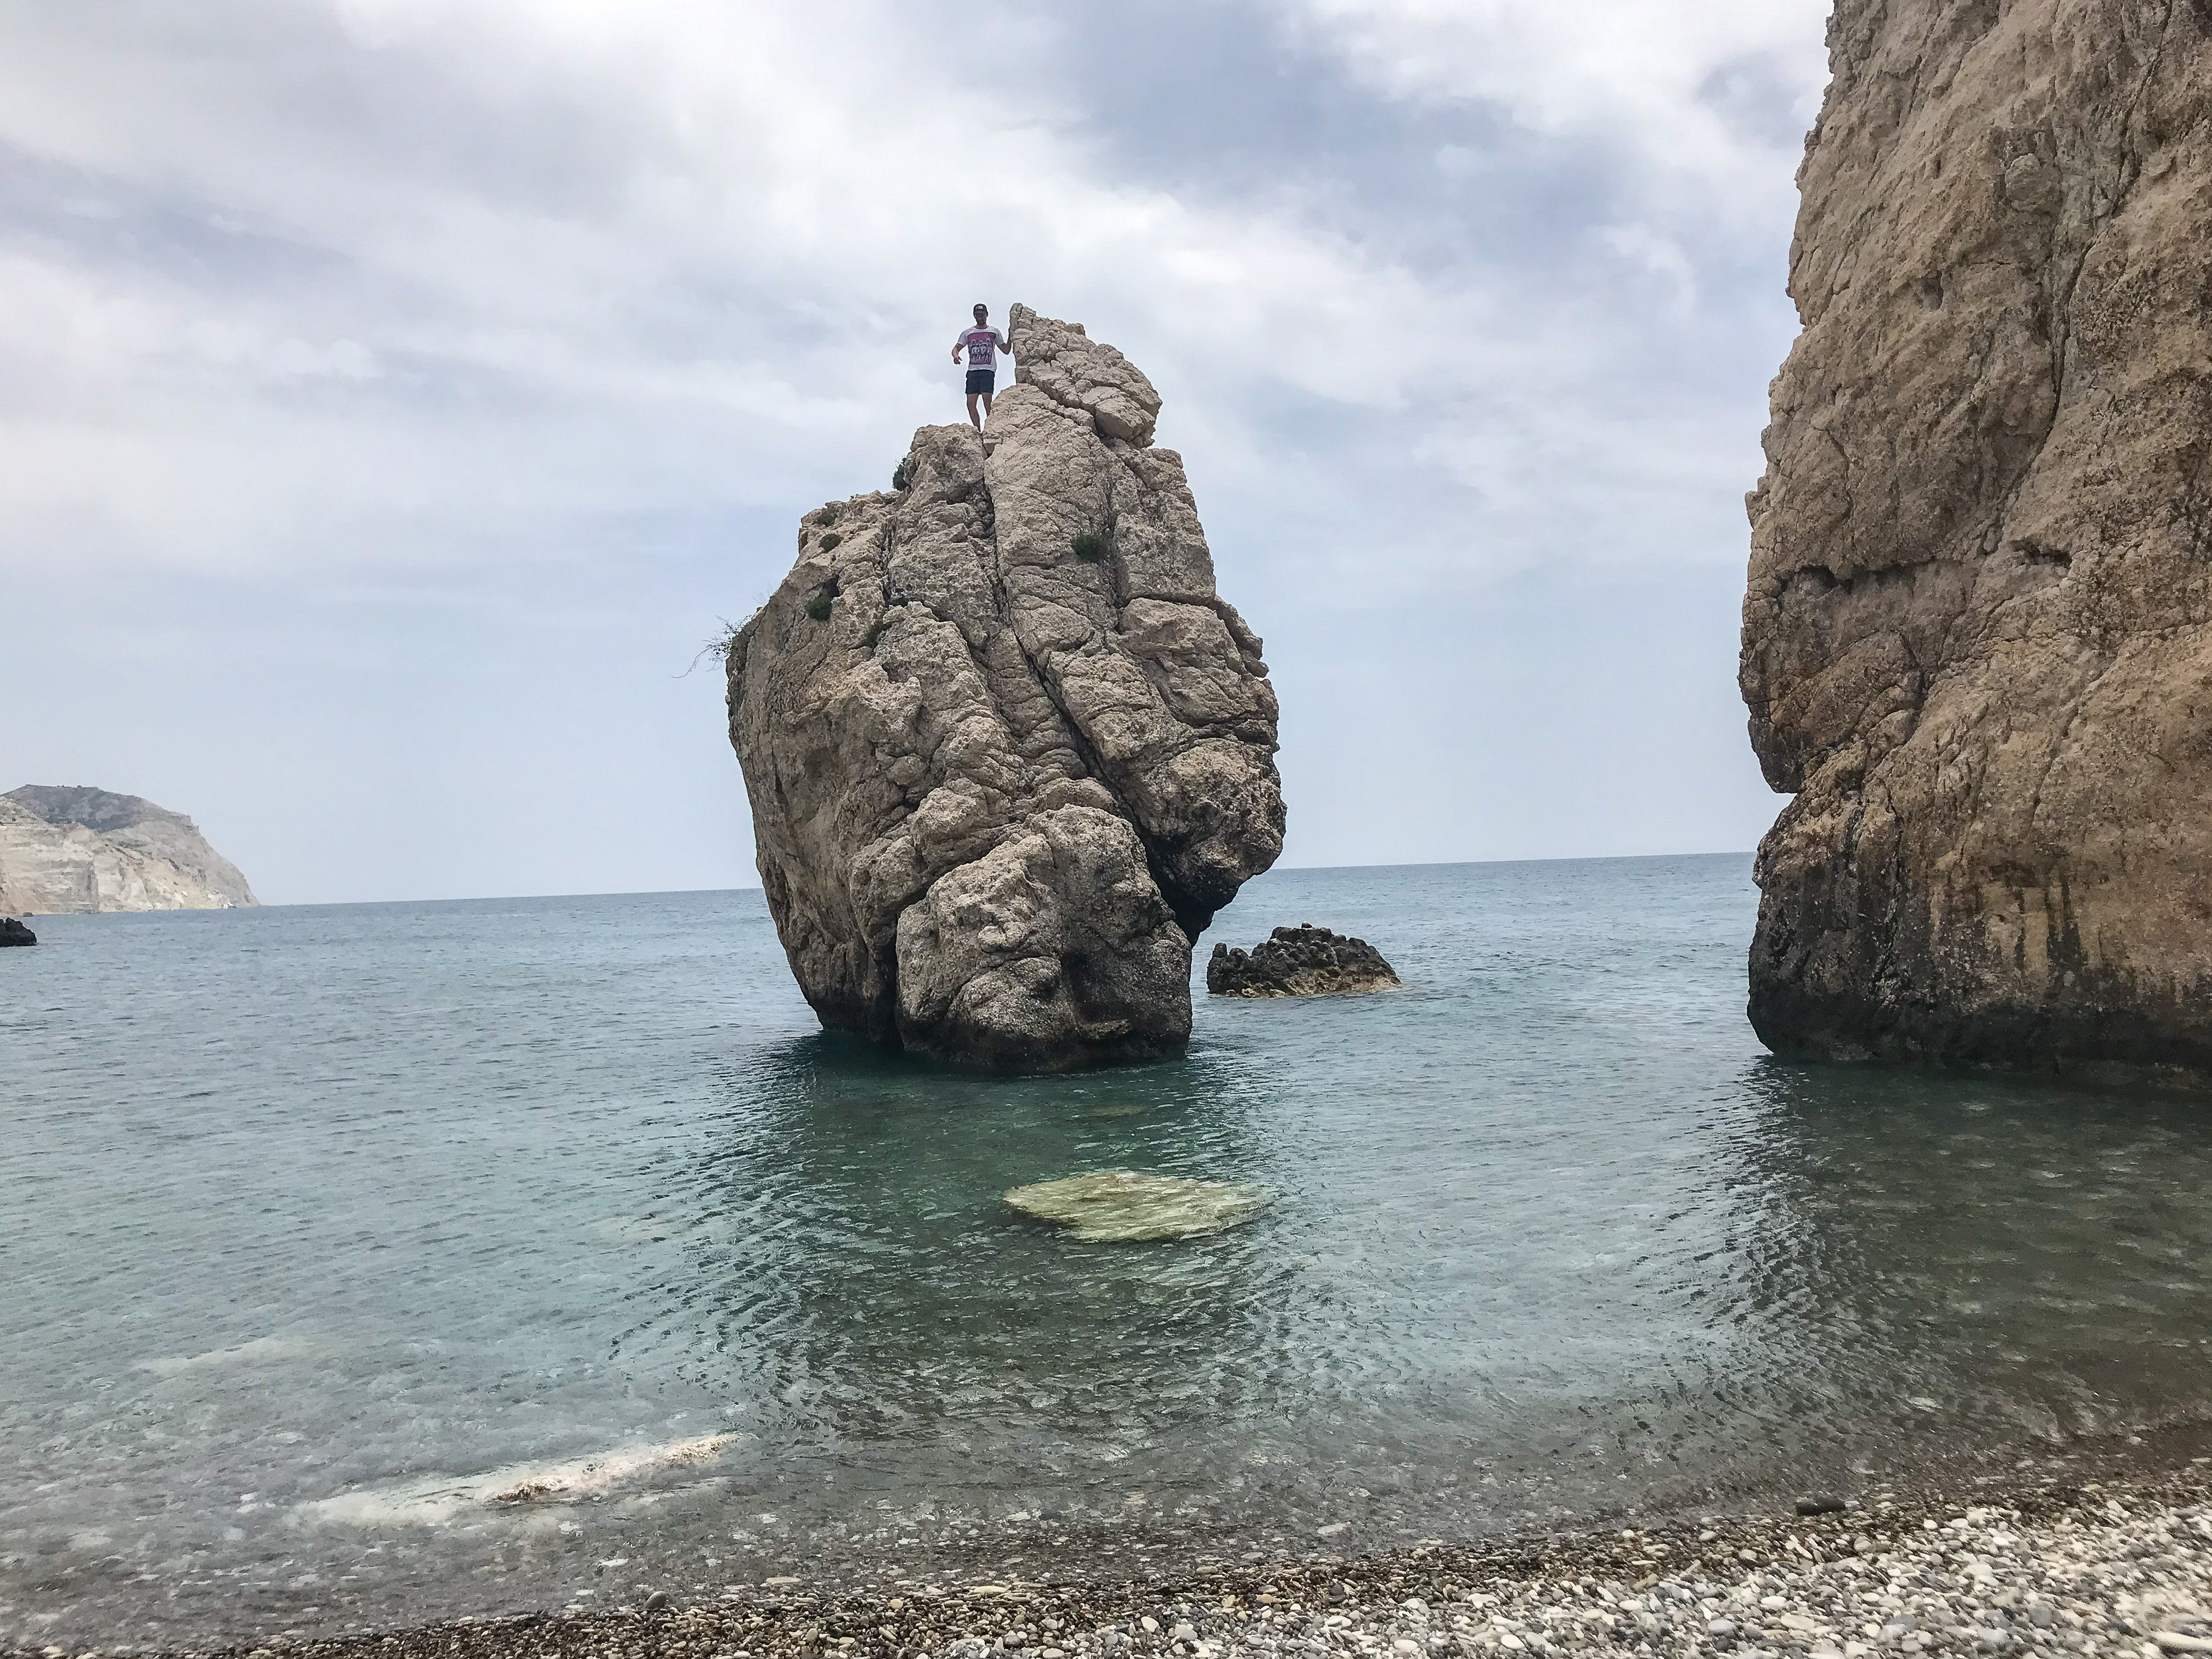 cyprus places to visit - Petra Tou Romiou - Aphrodite's Rock